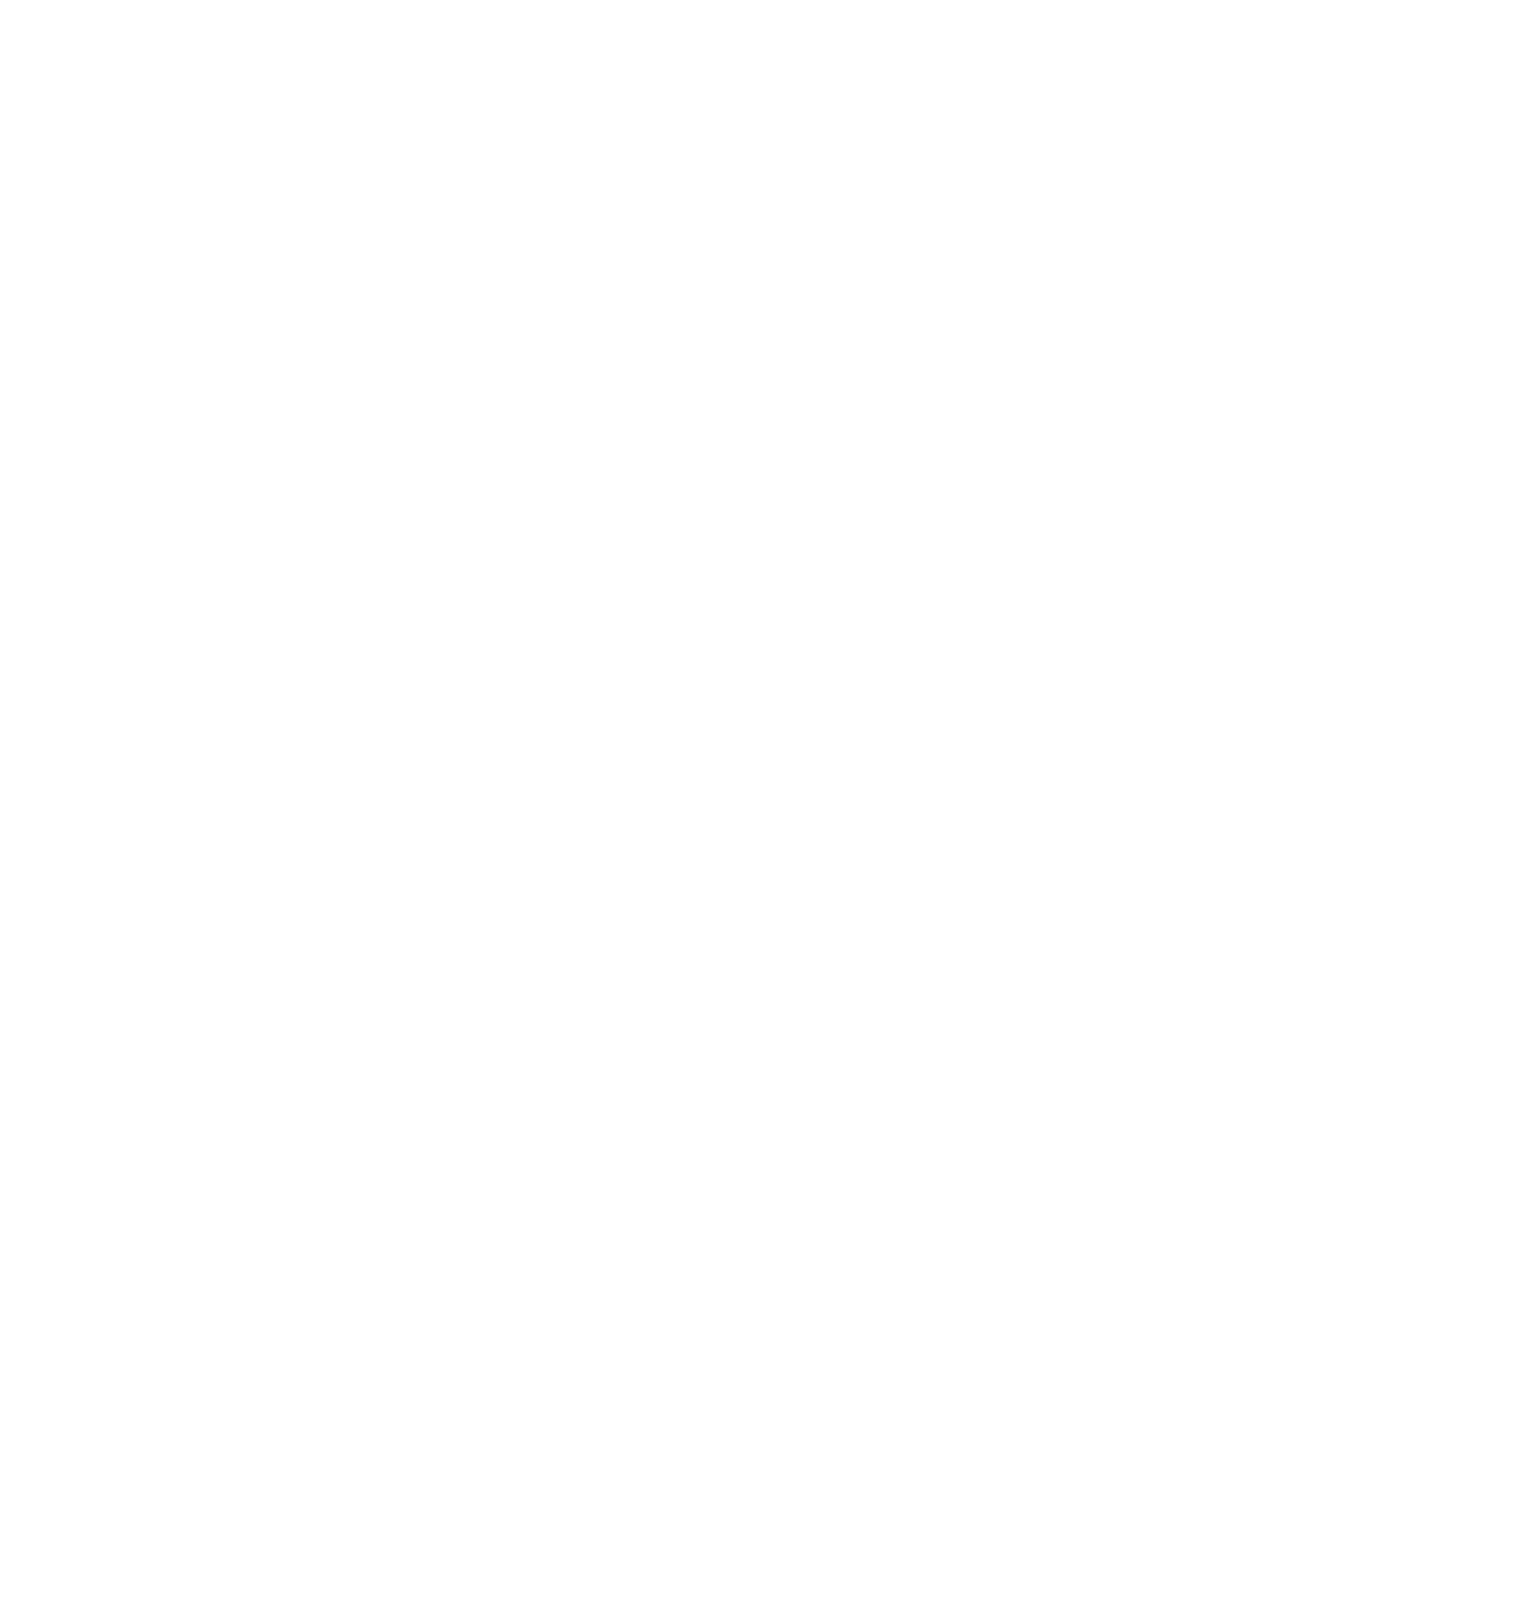 REN (Redes Energéticas Nacionais) logo for dark backgrounds (transparent PNG)